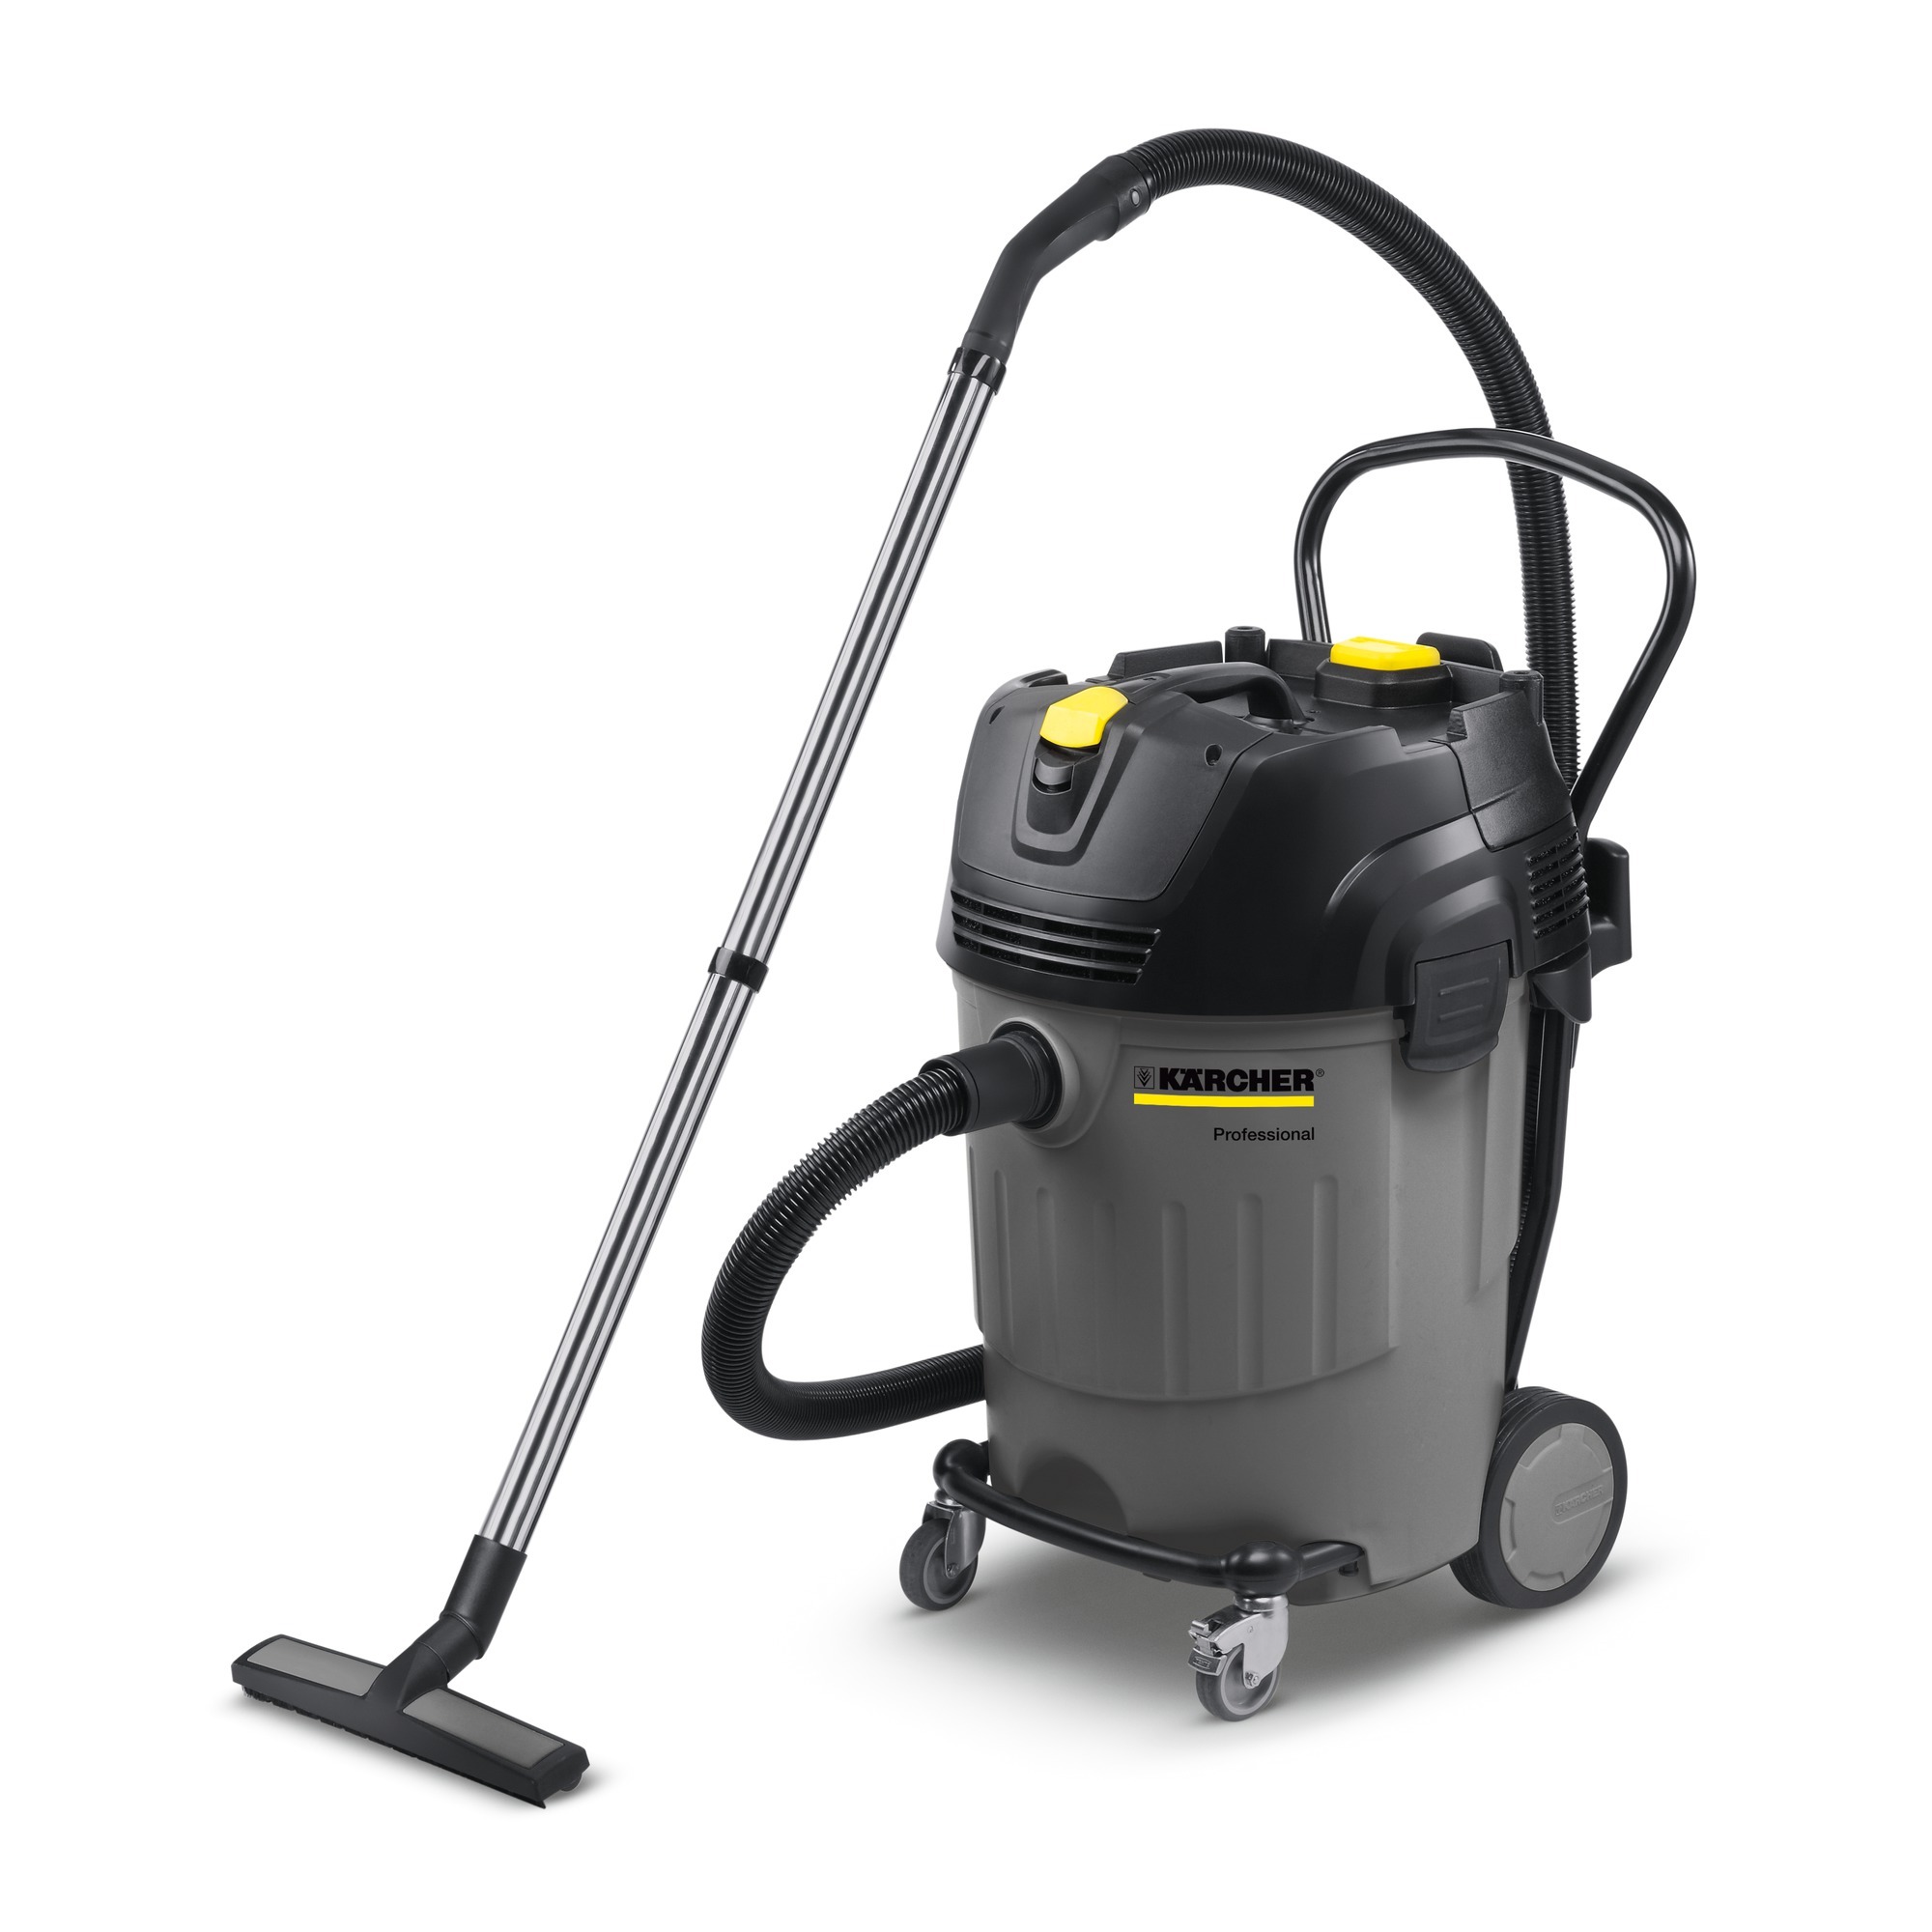 Kärcher Wet and dry vacuum cleaner NT 65/2 Ap zwart, grijs